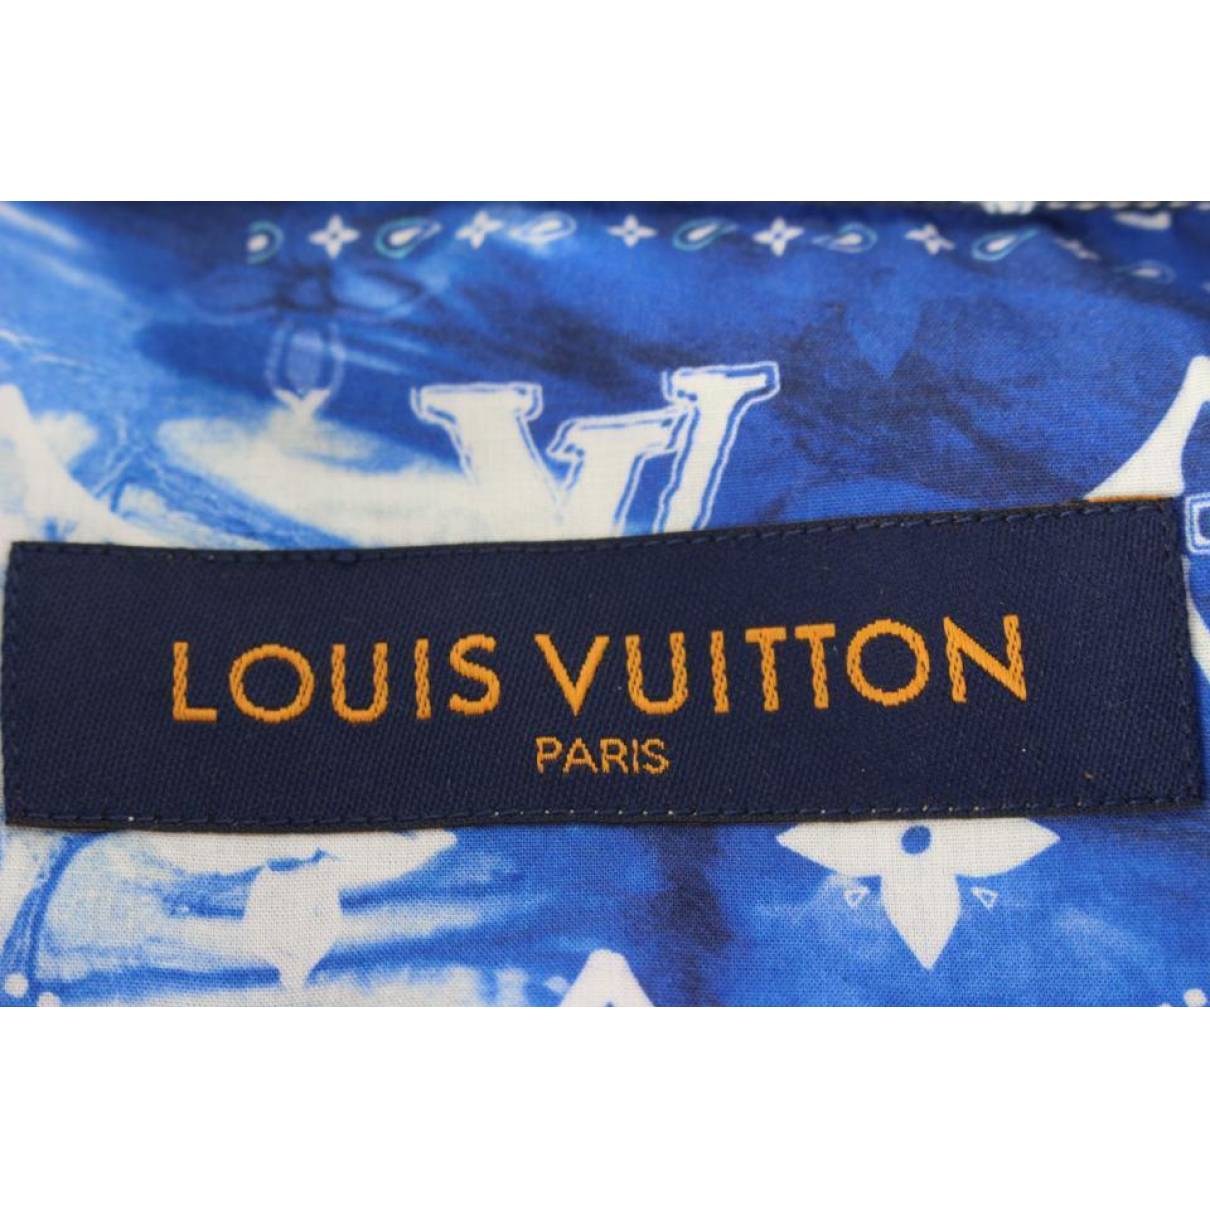 Sweatshirt Louis Vuitton Blue size XL International in Cotton - 33022958